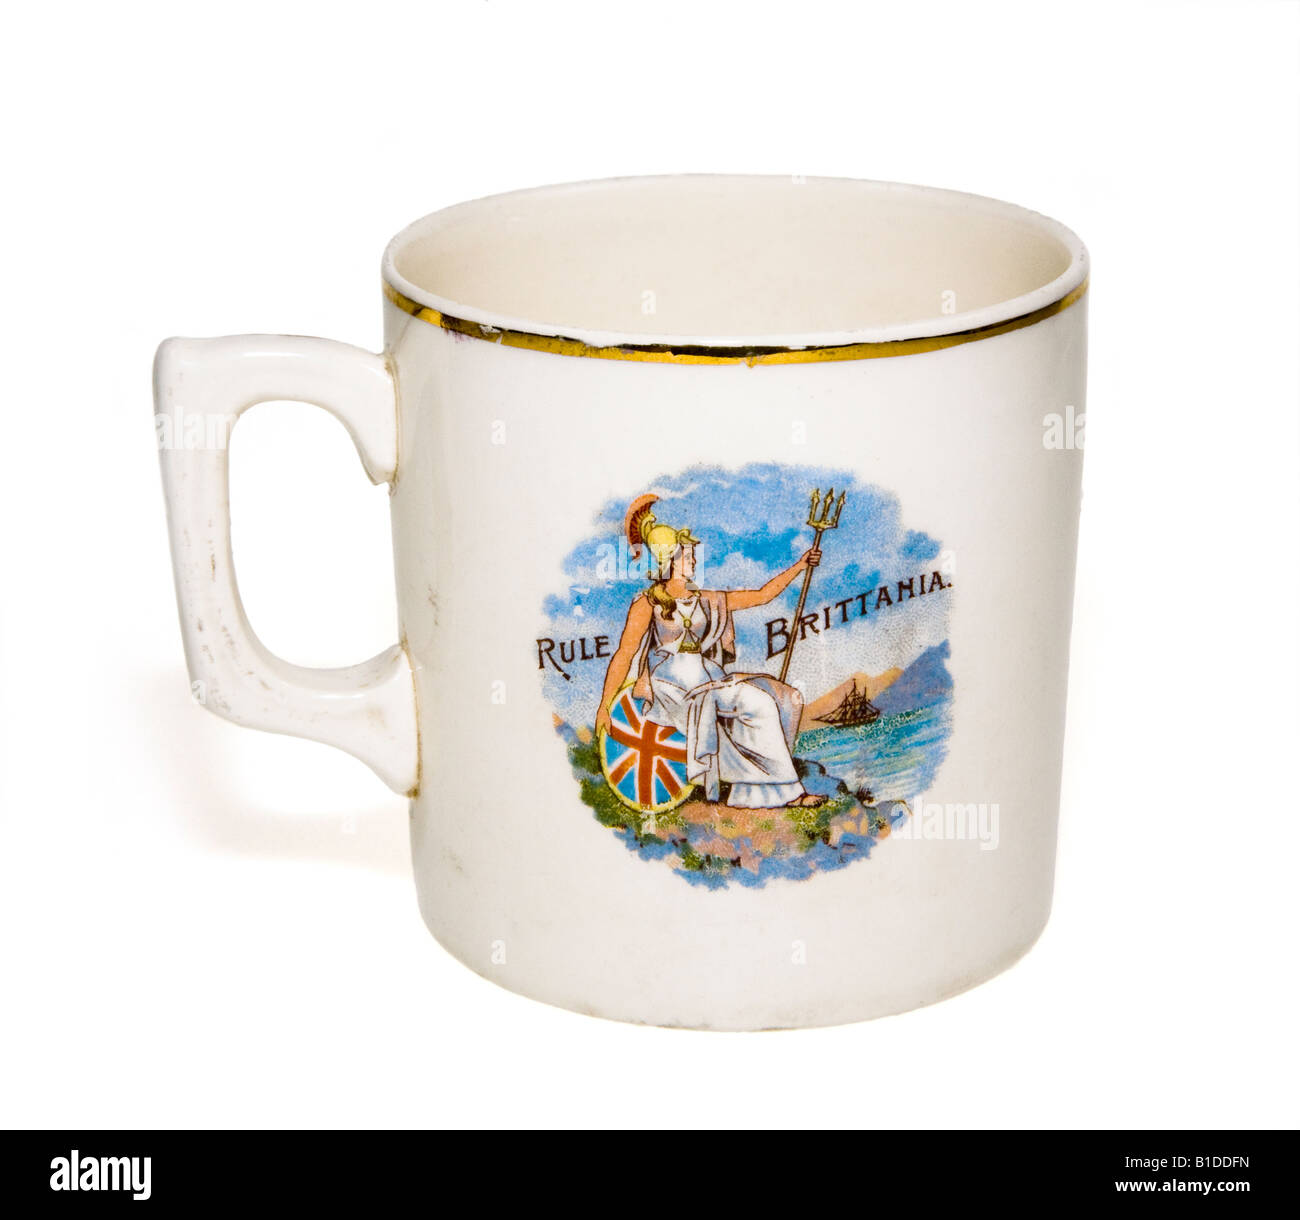 Rule Britannia peint sur un mug Bretagne Banque D'Images